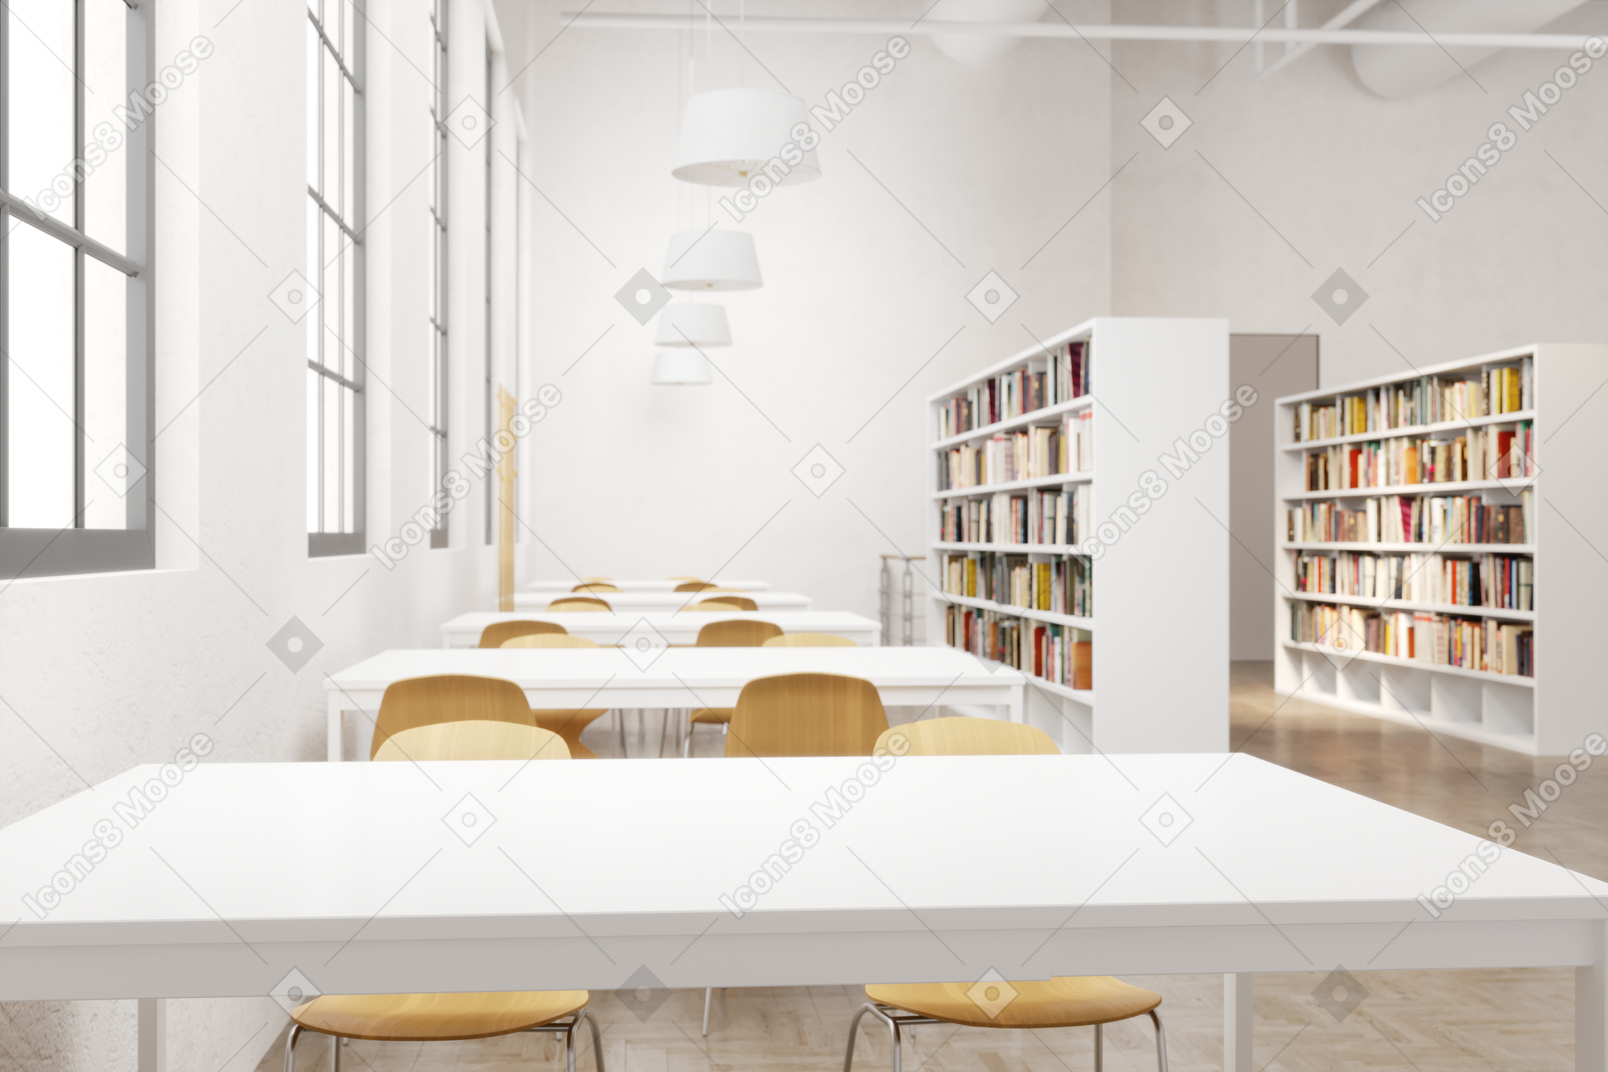 Biblioteca moderna con escritorios y sillas